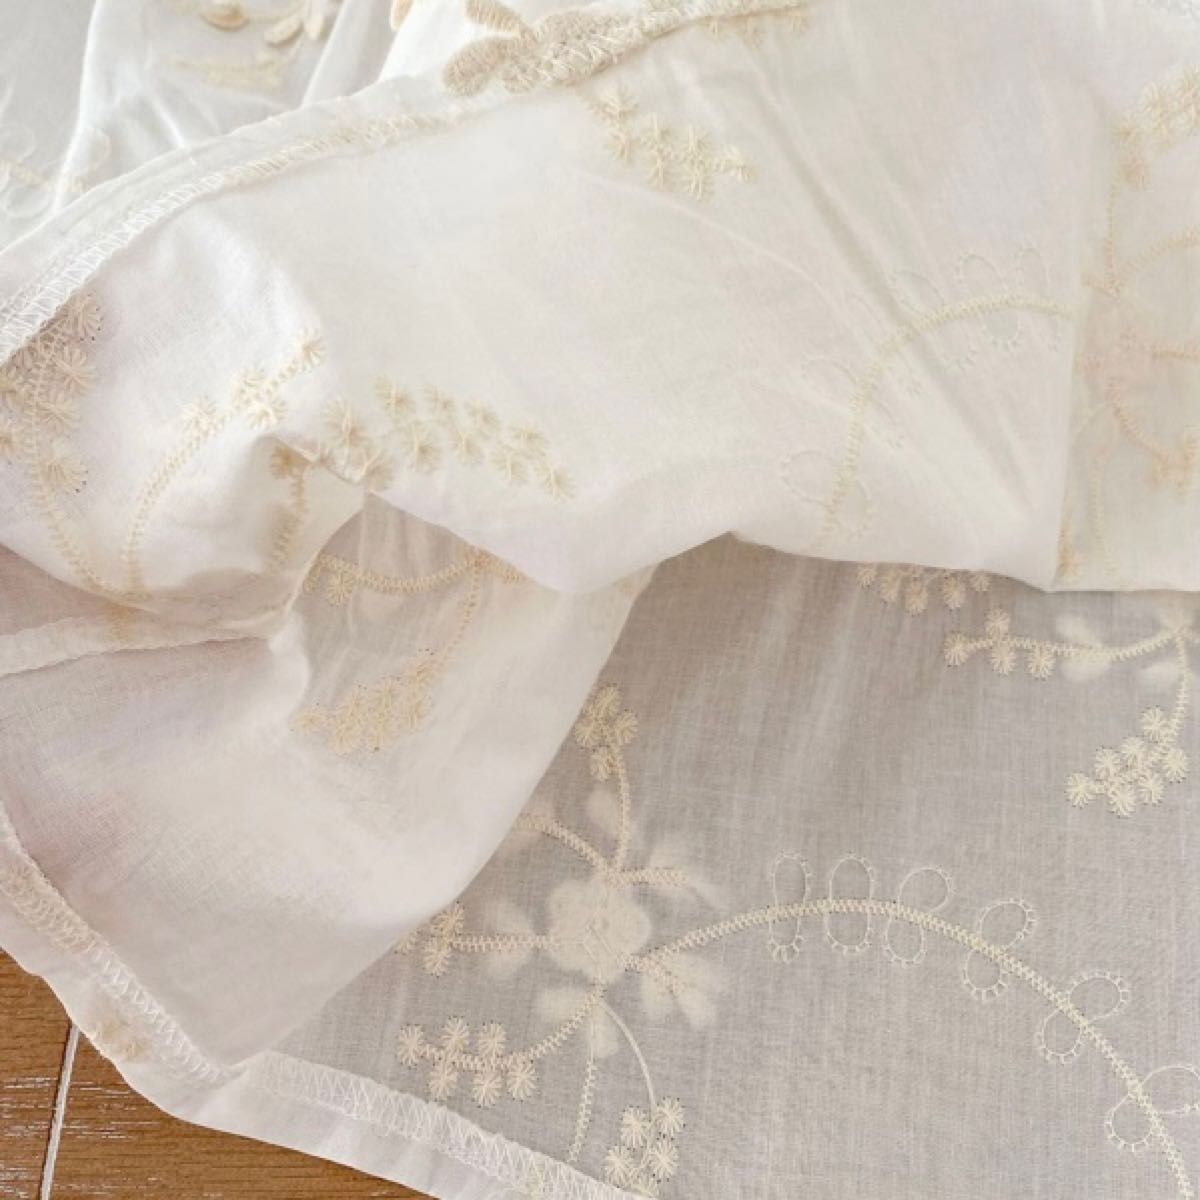 110サイズ 花の刺繍 レース 白 アイボリー ベージュ ワンピース 韓国子供服